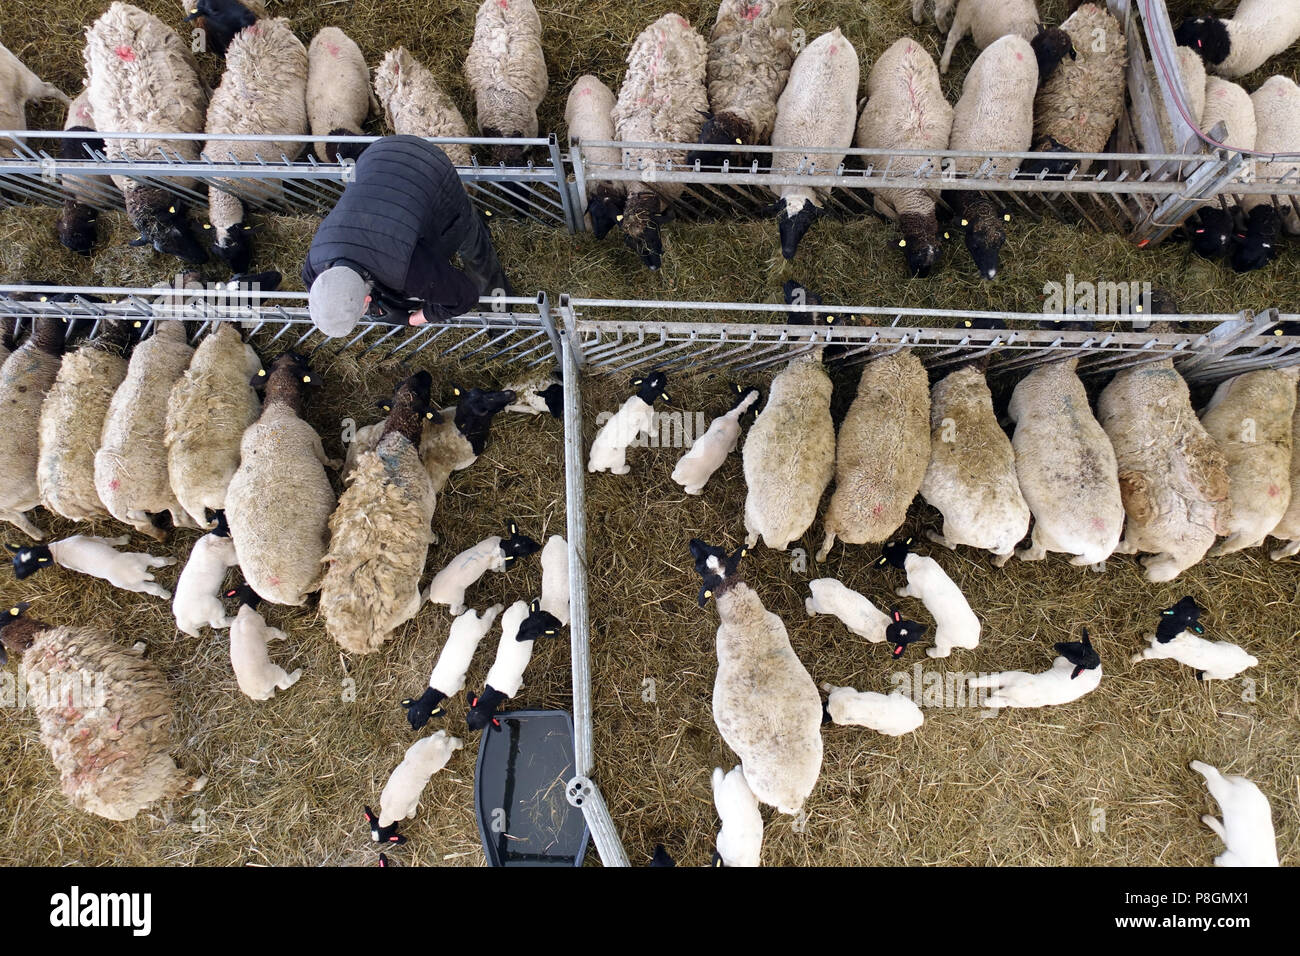 Nouveau Kaetwin, Allemagne, dans le mouton Dorper foin manger stable Banque D'Images